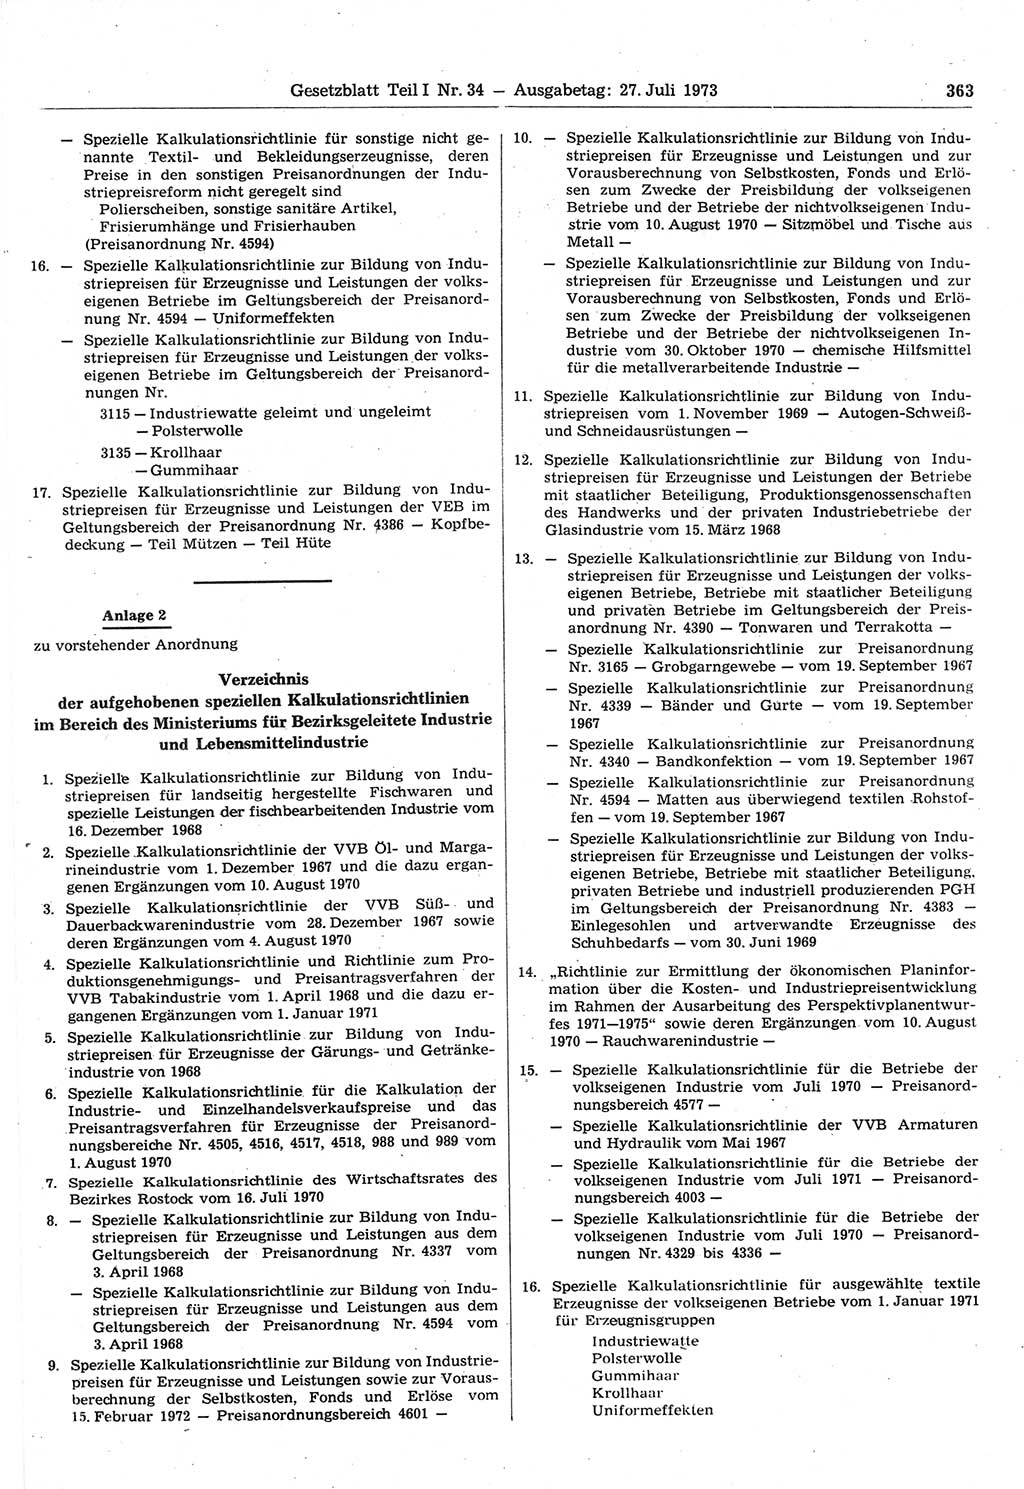 Gesetzblatt (GBl.) der Deutschen Demokratischen Republik (DDR) Teil Ⅰ 1973, Seite 363 (GBl. DDR Ⅰ 1973, S. 363)